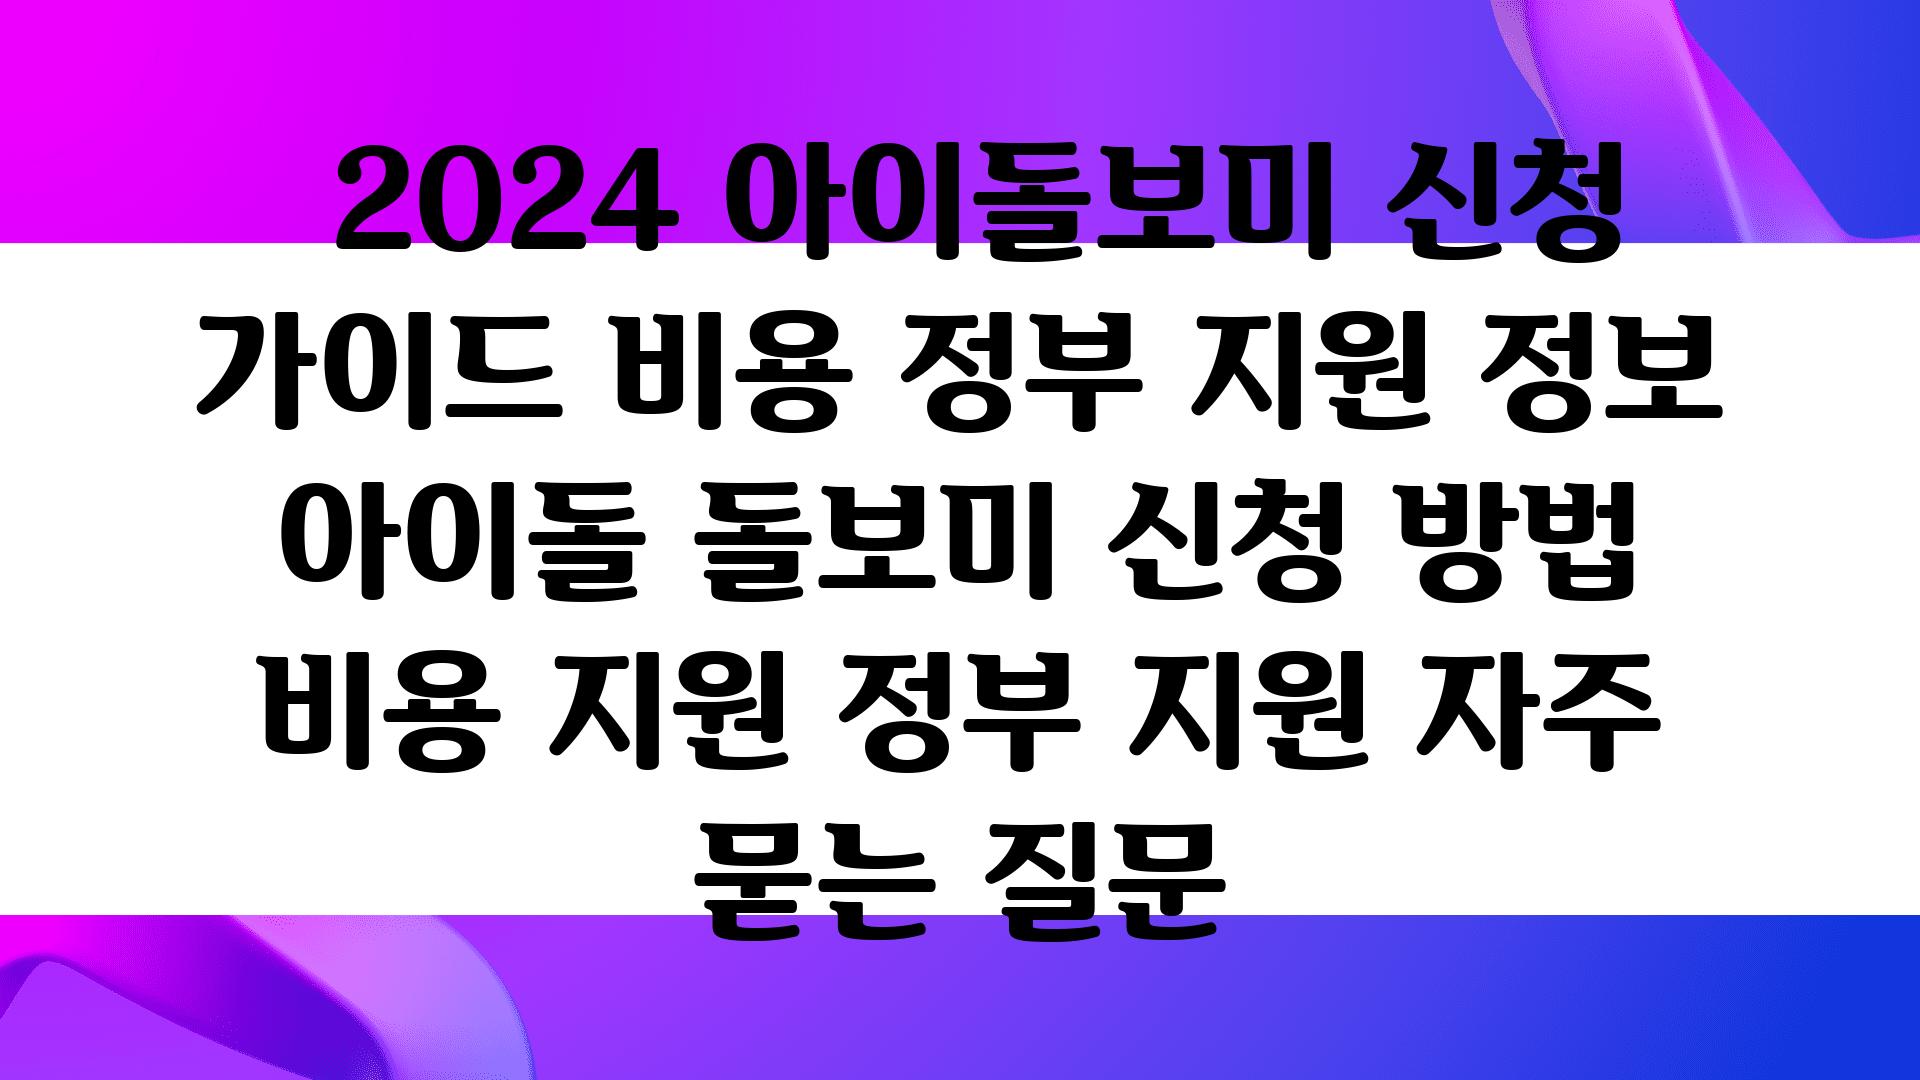  2024 아이돌보미 신청 설명서 비용 정부 지원 정보  아이돌 돌보미 신청 방법 비용 지원 정부 지원 자주 묻는 질문